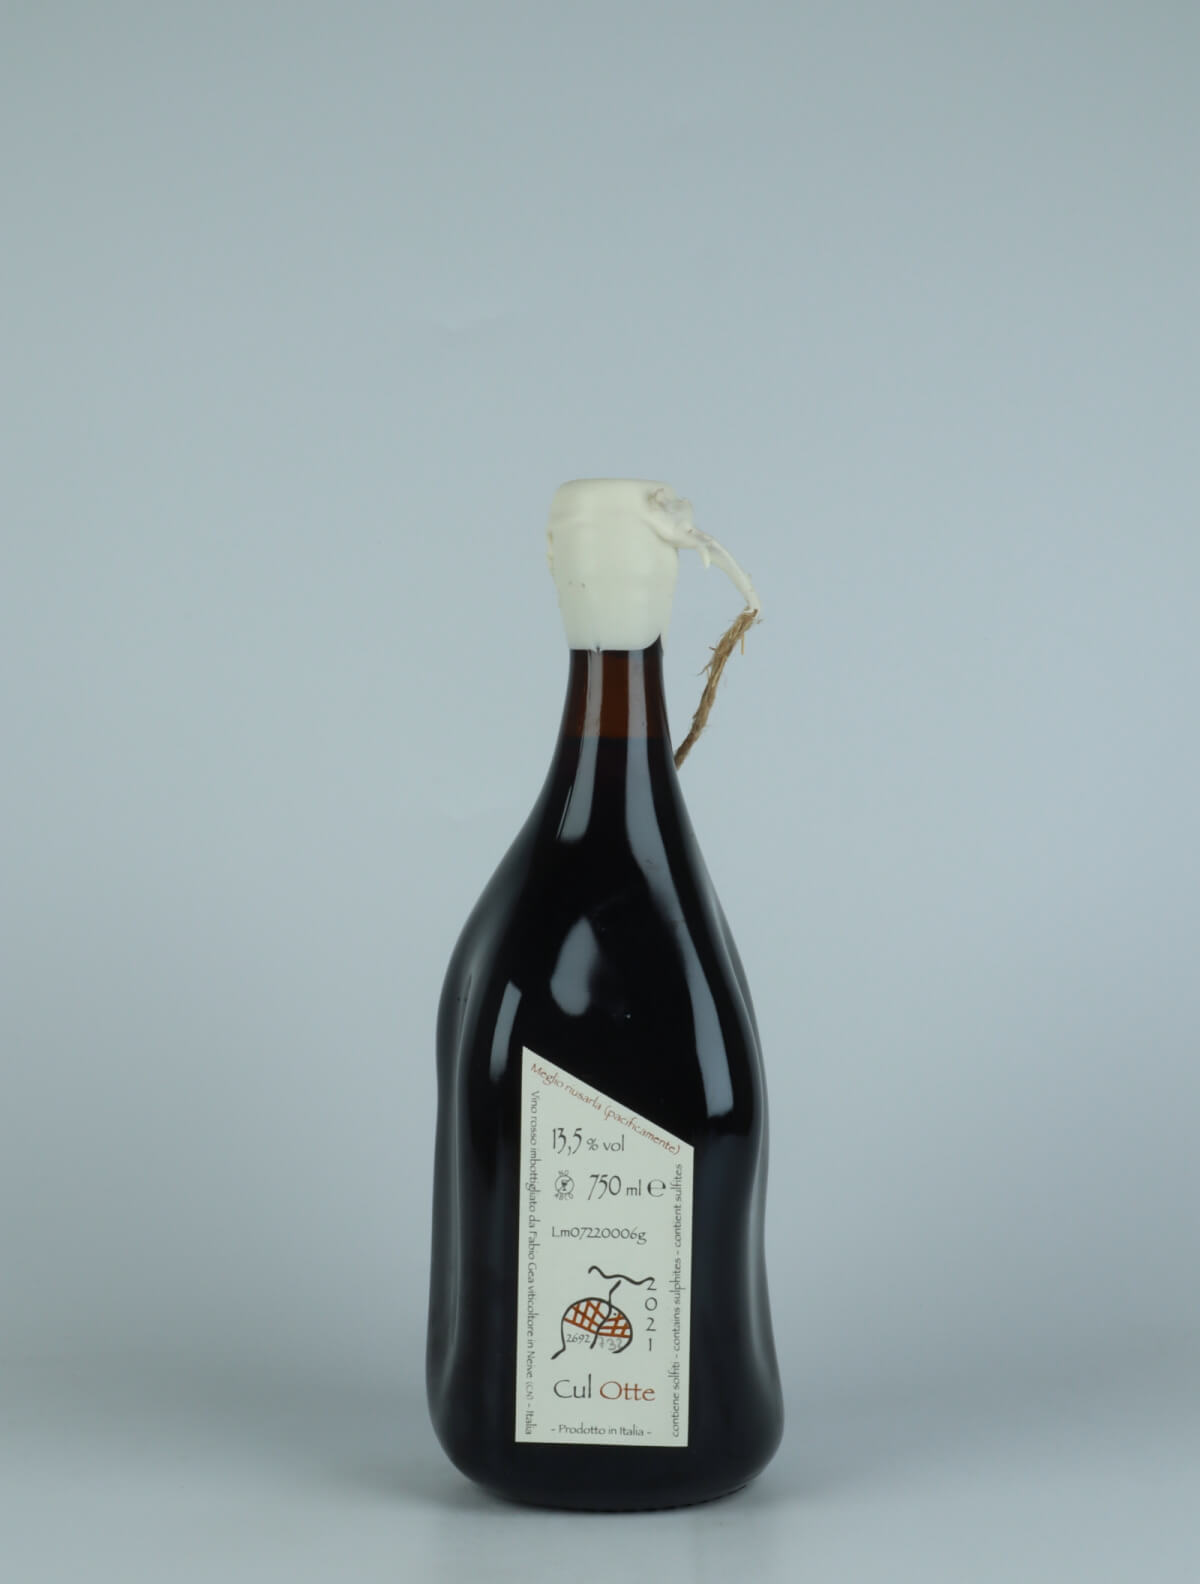 En flaske 2021 Cul Otte Rødvin fra Fabio Gea, Piemonte i Italien